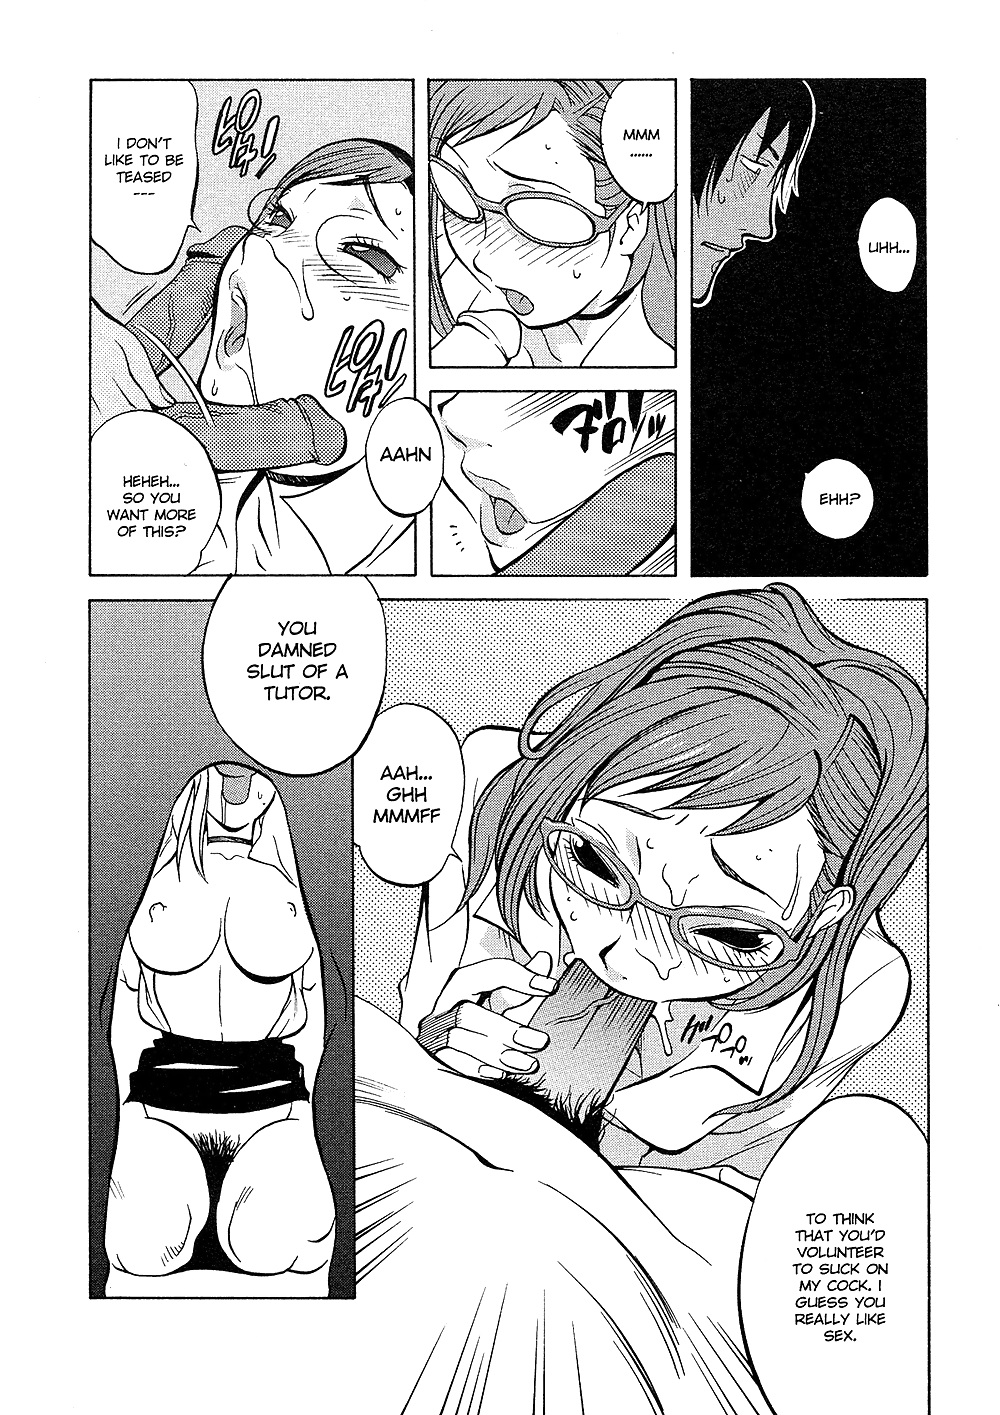 (comic hentai) yumisuke kotoyoshi erotic works #2
 #21623403